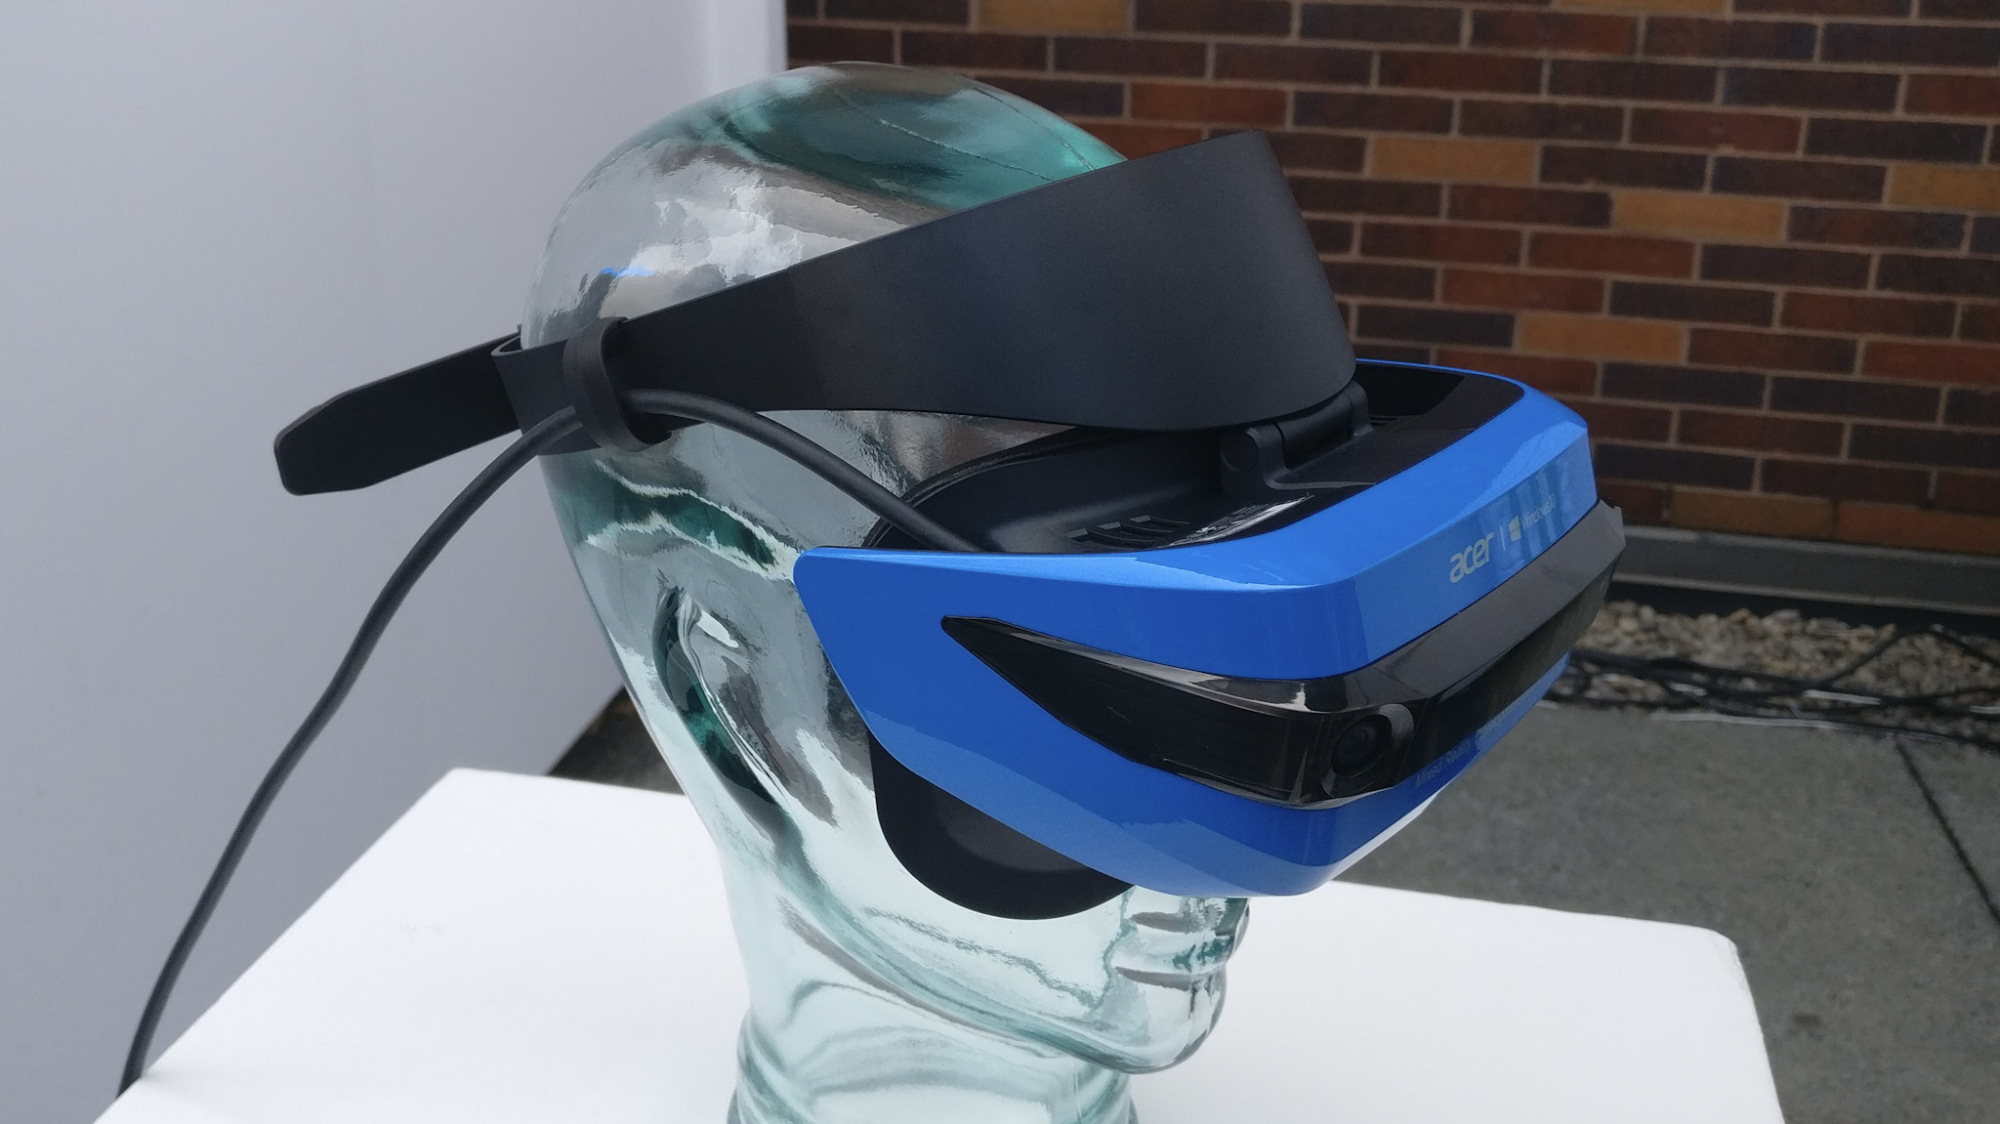 Acer Windows Mixed Reality: Die VR-Brille kurz ausprobiert | heise online